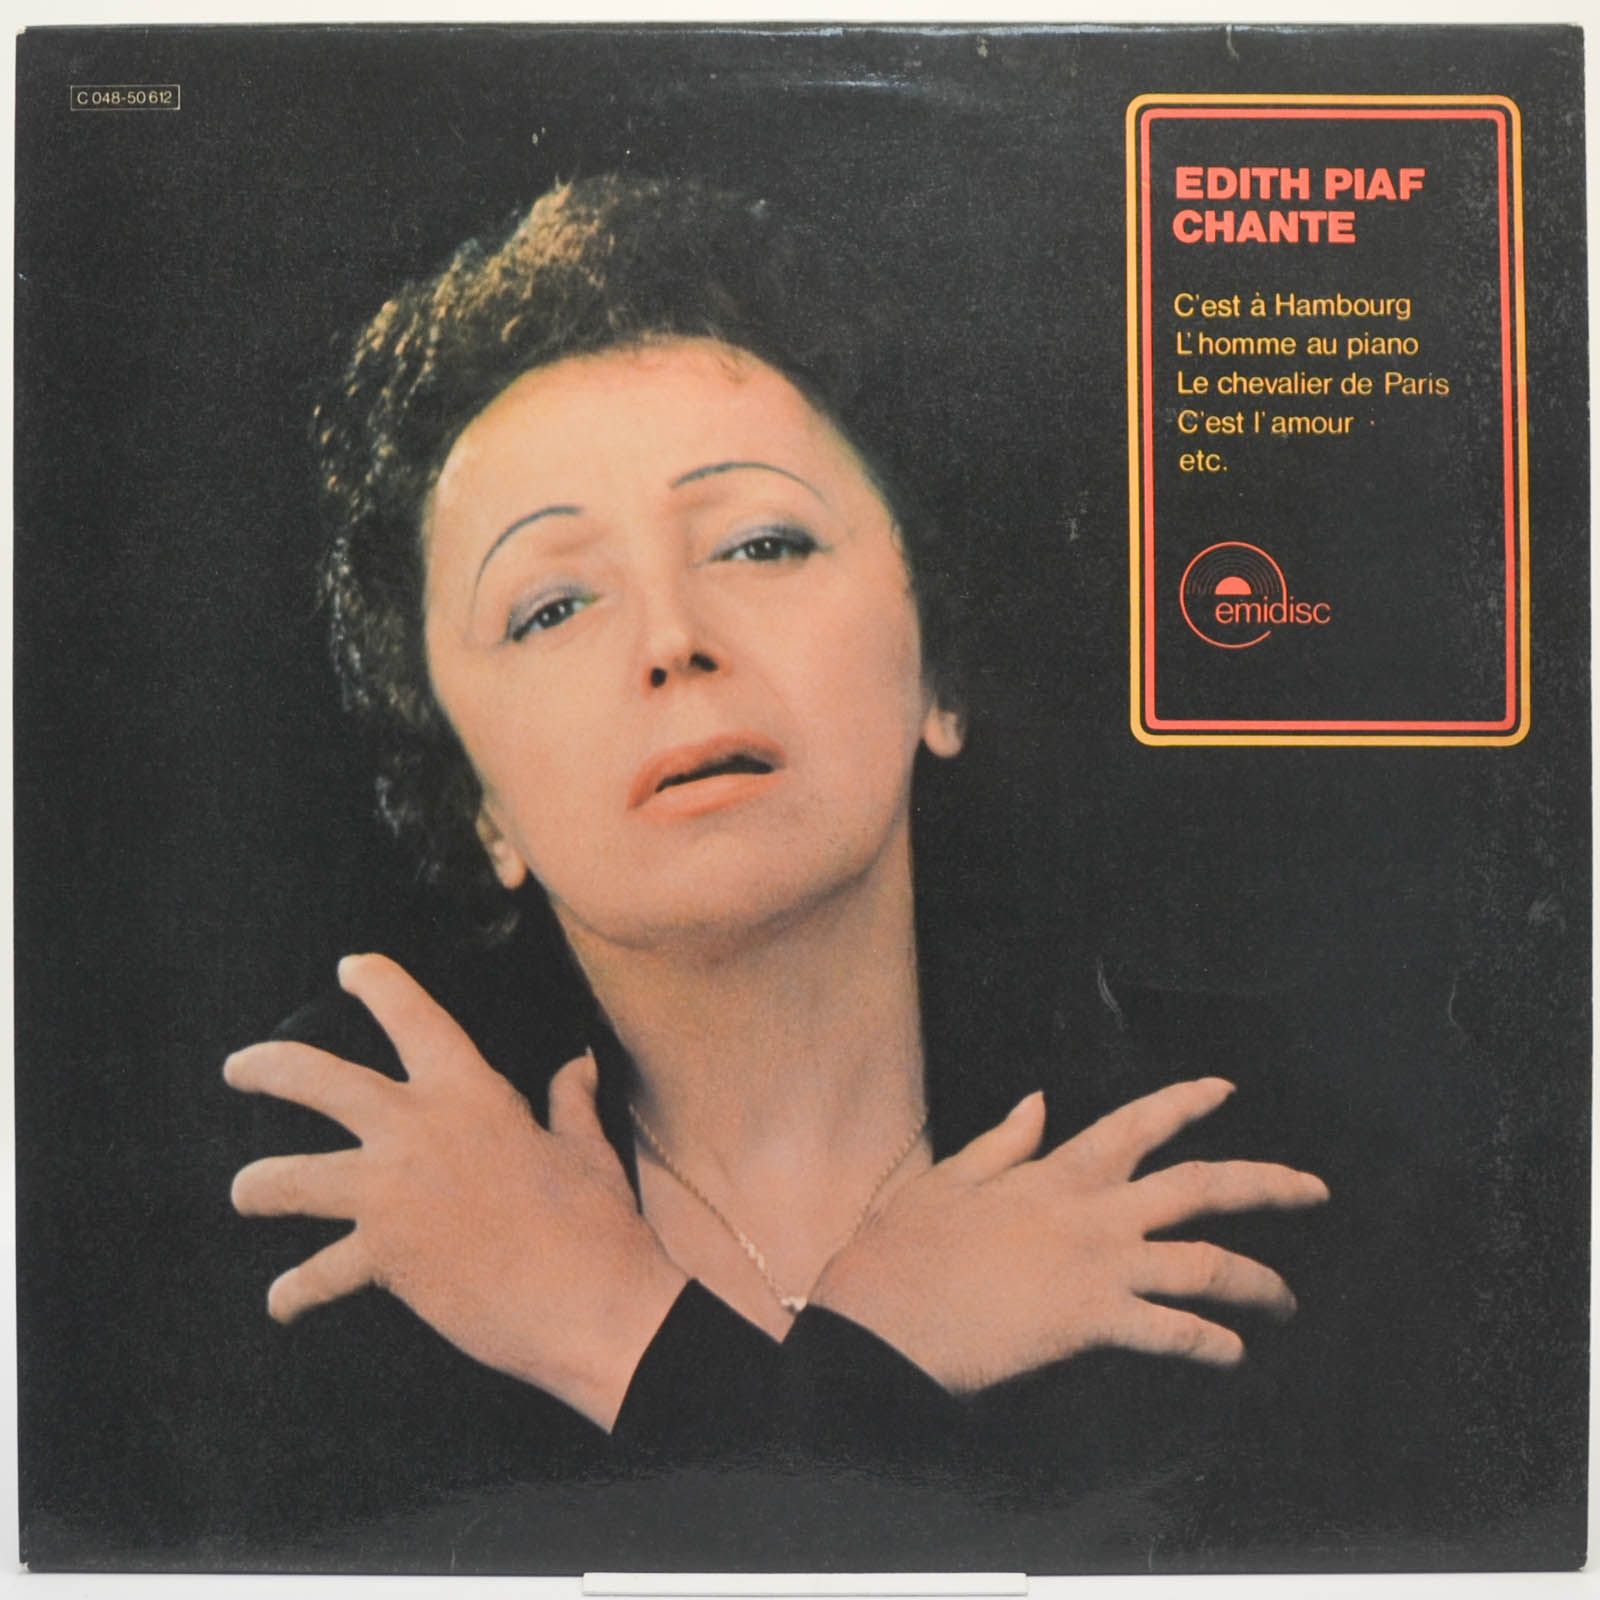 Edith Piaf — Chante, 1970